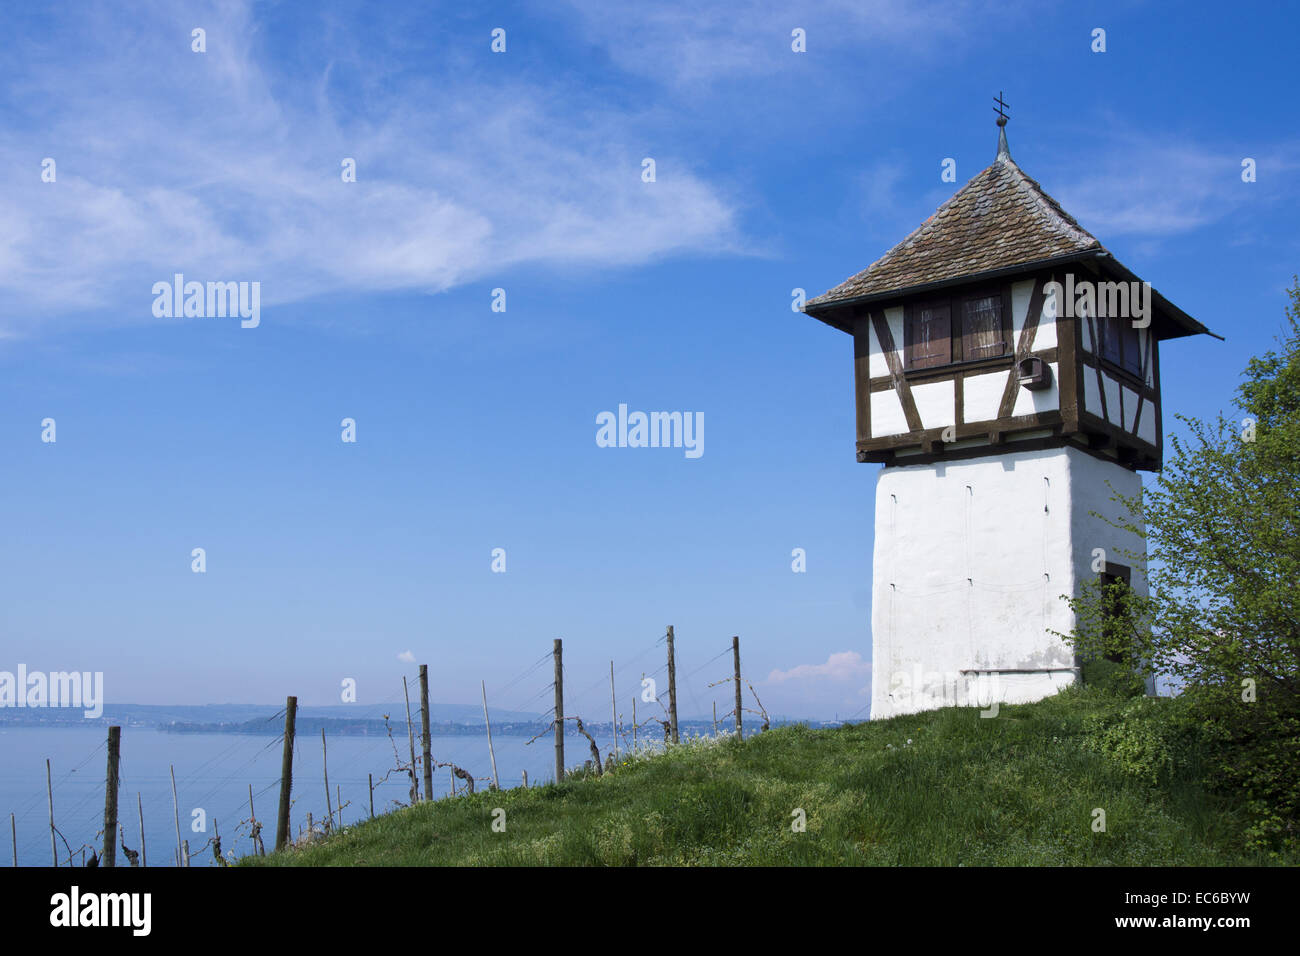 Winegrower tower and Rebgut Haltnau vineyard on Lake Constance, in the background Meersburg, Baden-Wuerttemberg, Germany, Europe Stock Photo